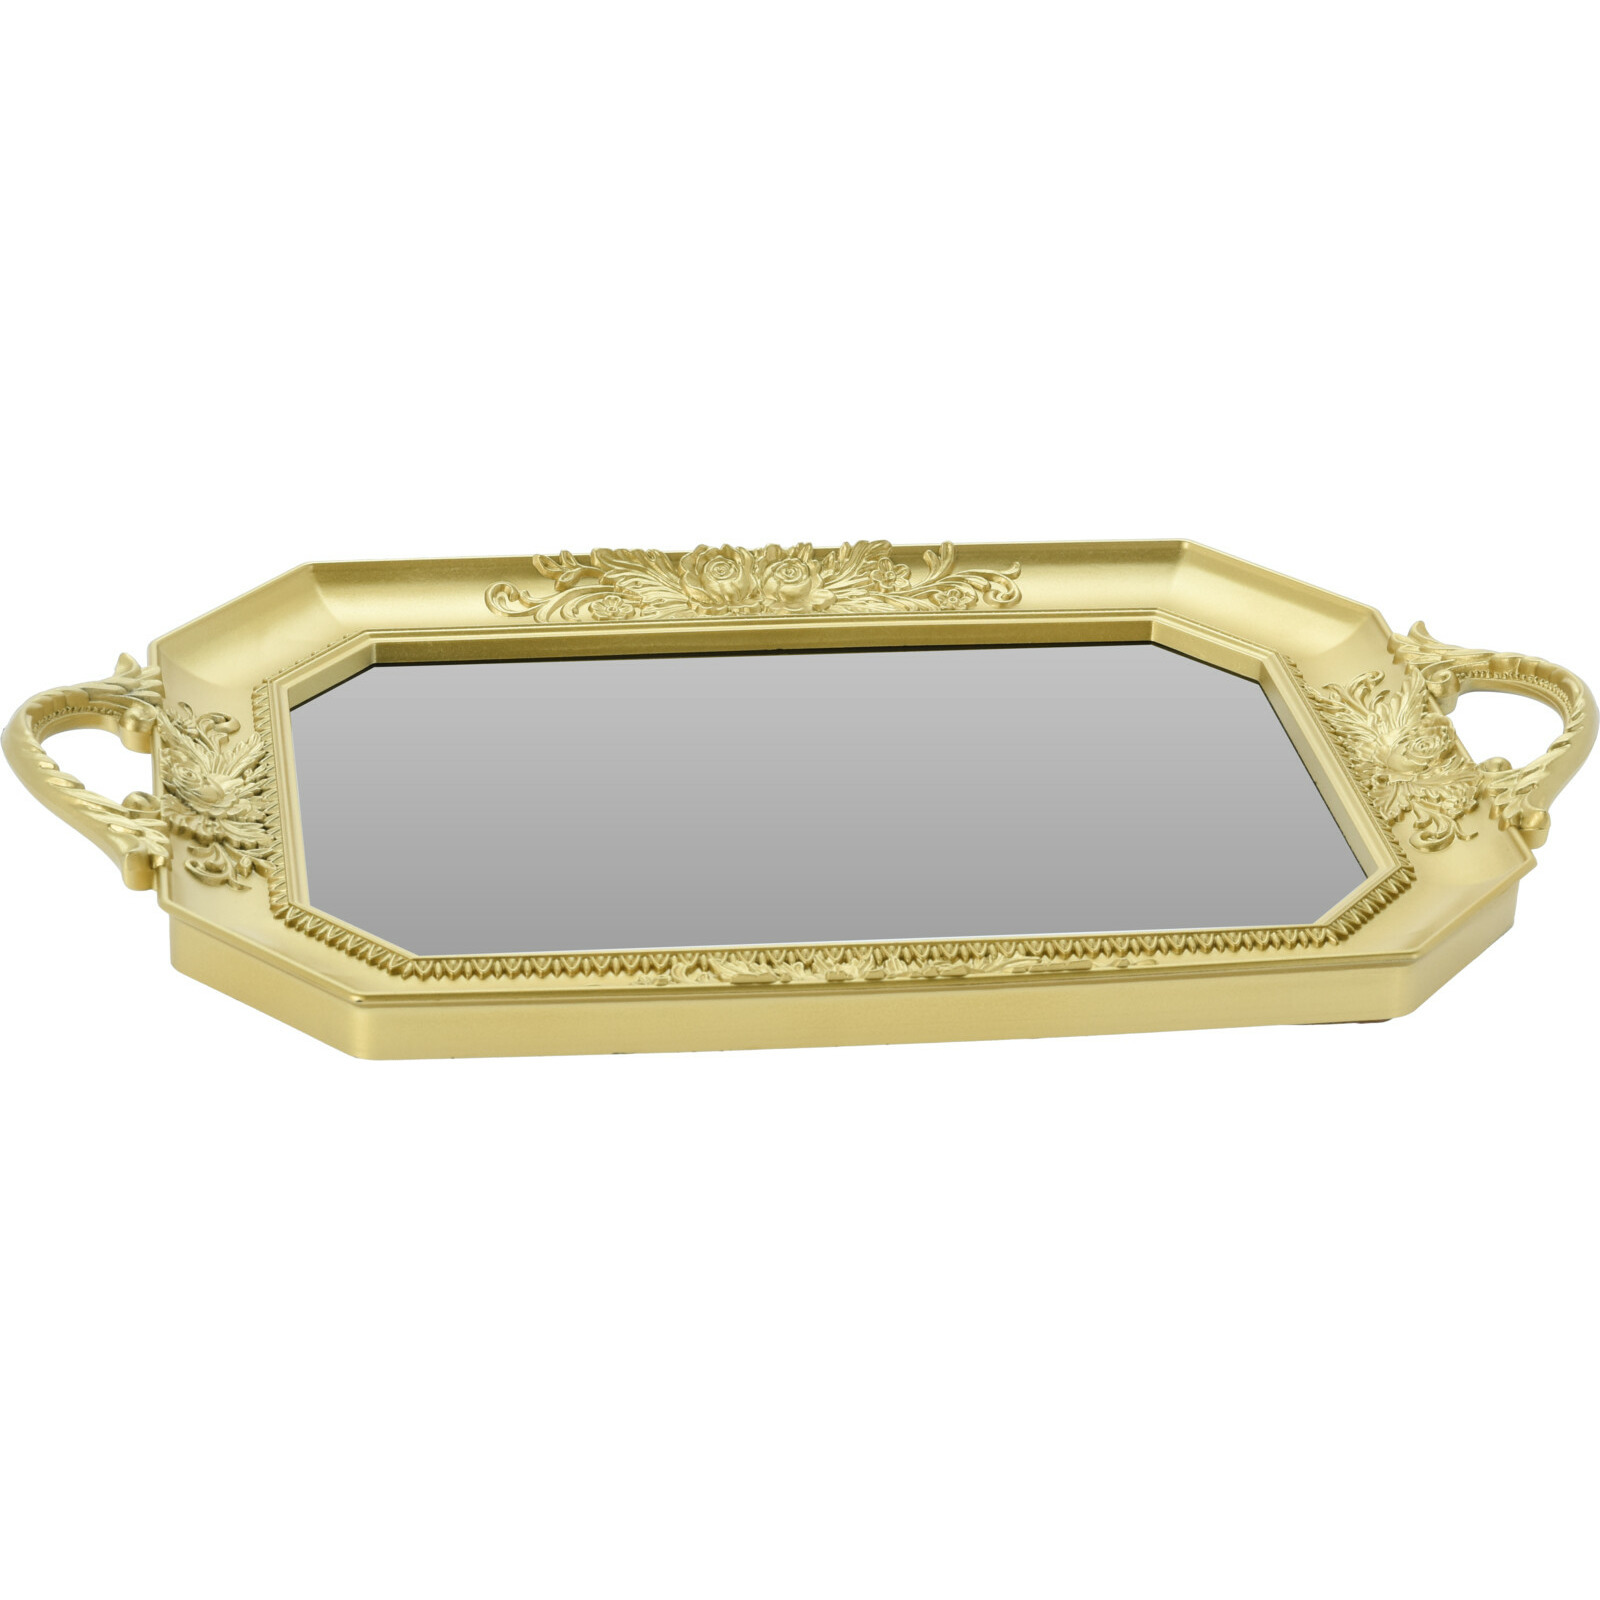 Dienblad - kaarsplateau - ovaal goud met spiegelbodem - kunststof